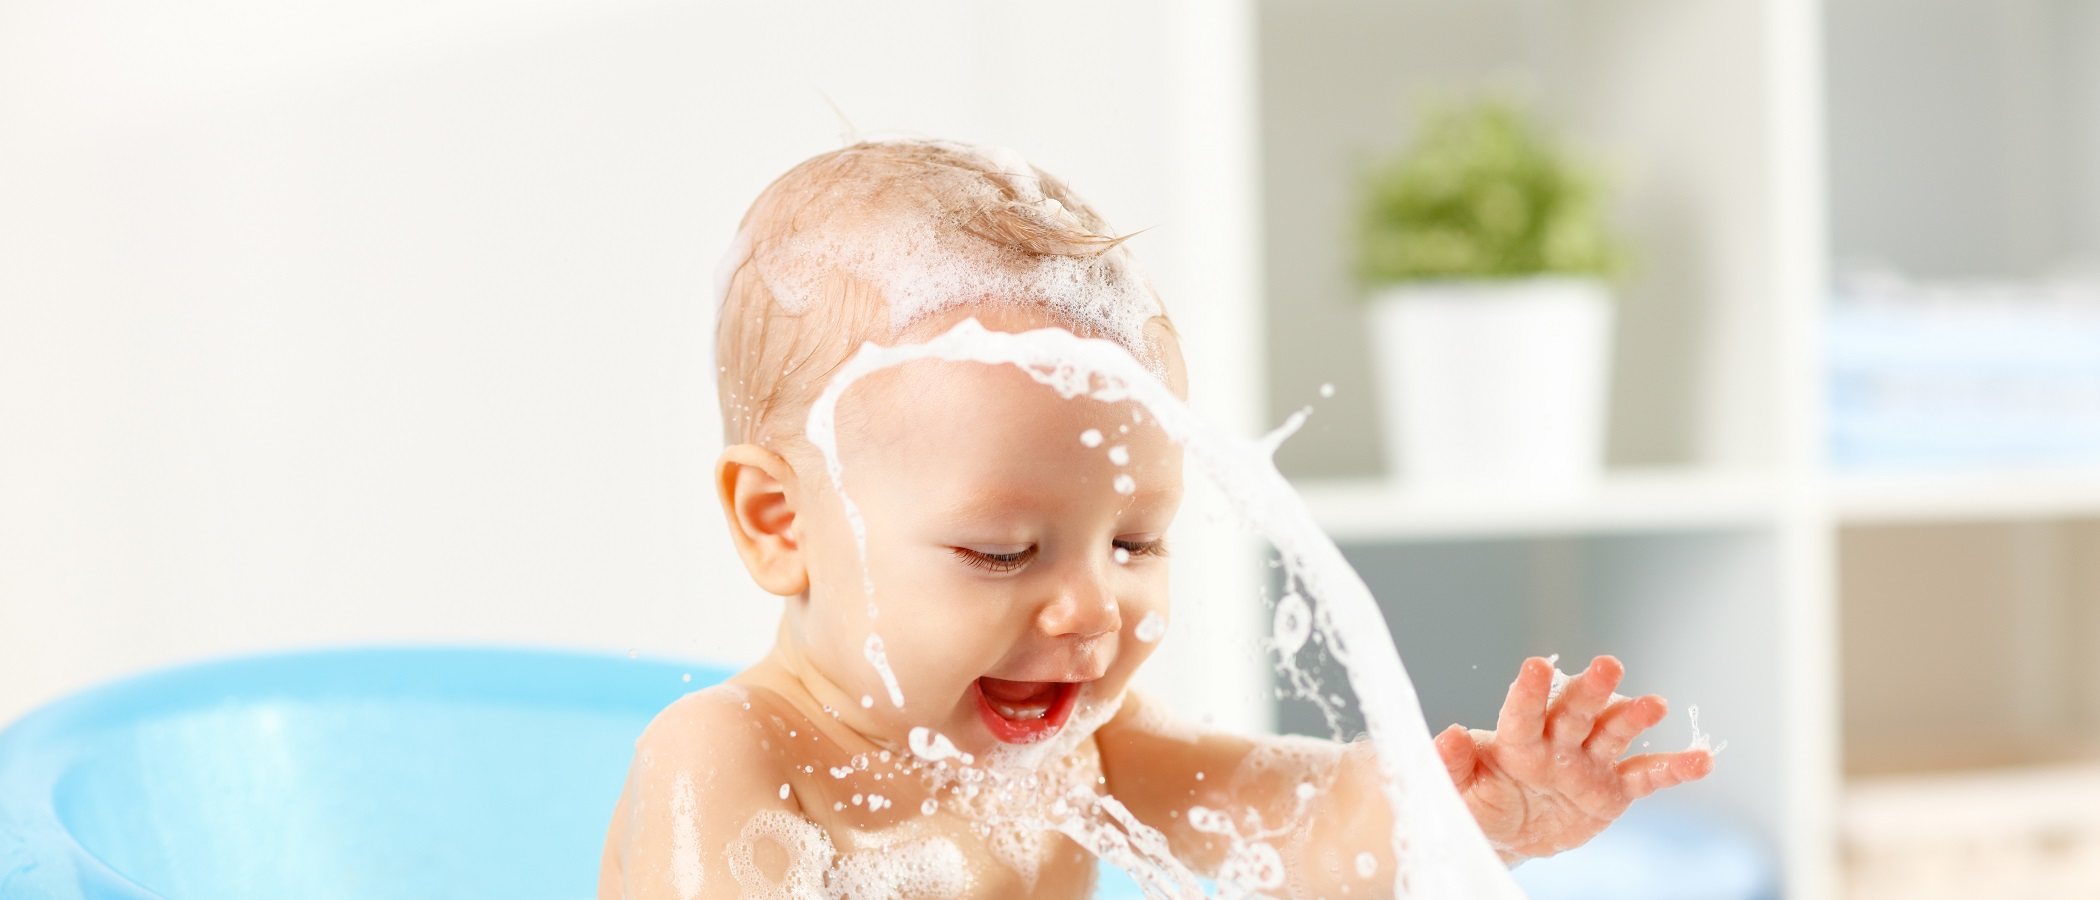 Si bañas a tu bebé, ¿puede contraer infección de oído?